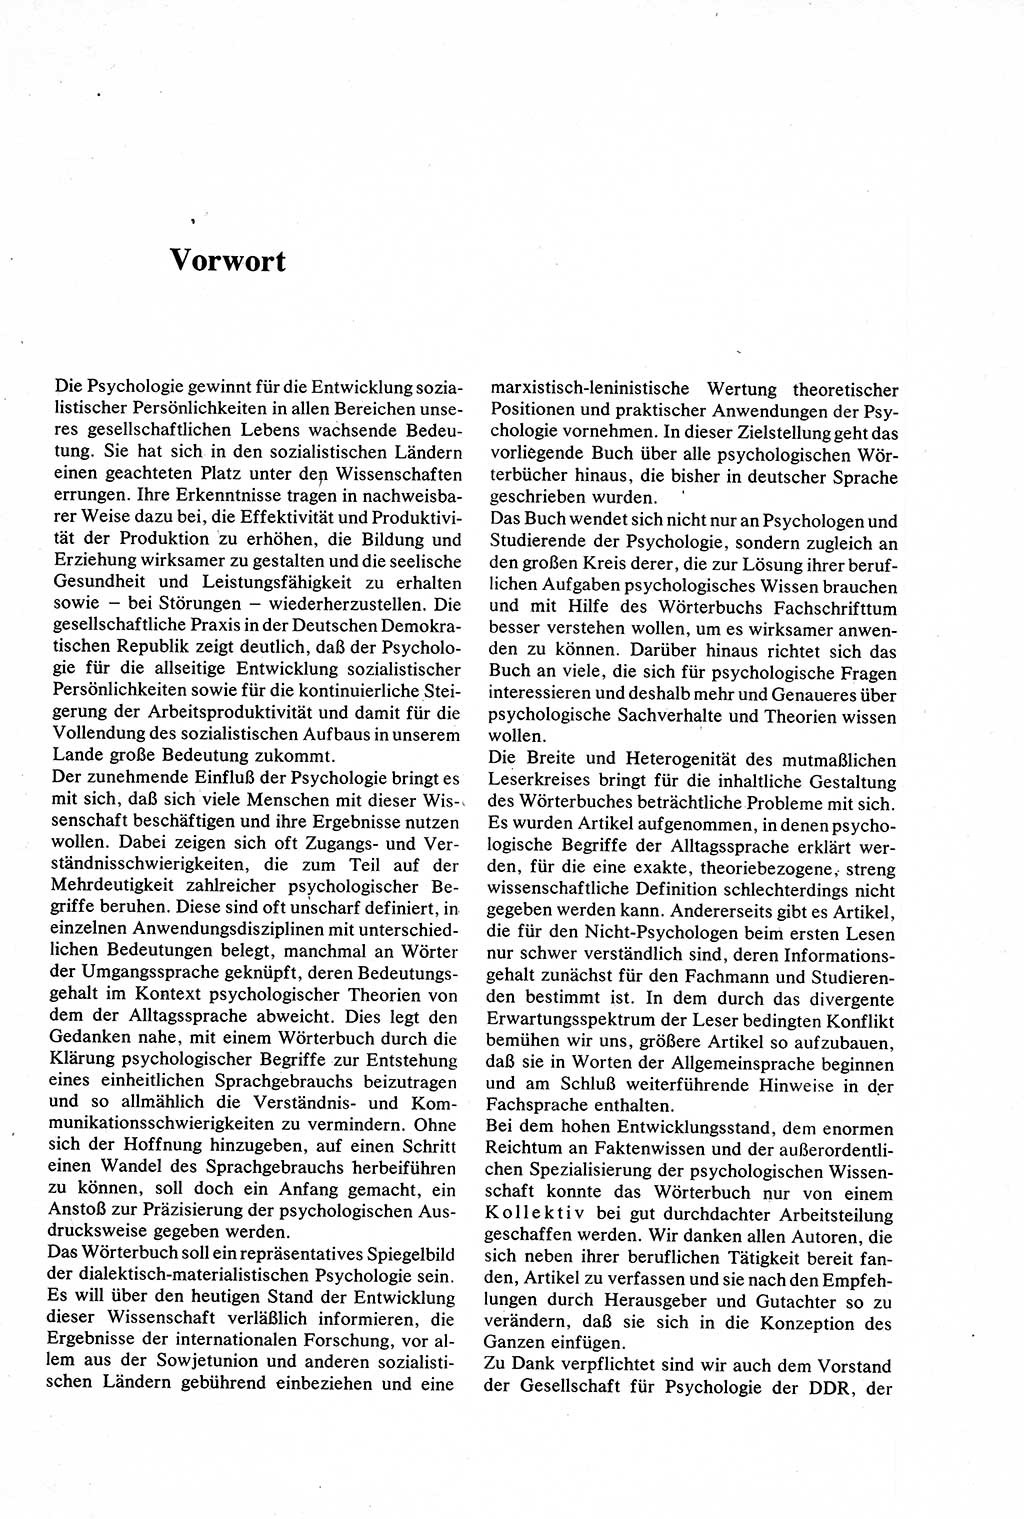 Wörterbuch der Psychologie [Deutsche Demokratische Republik (DDR)] 1976, Seite 5 (Wb. Psych. DDR 1976, S. 5)